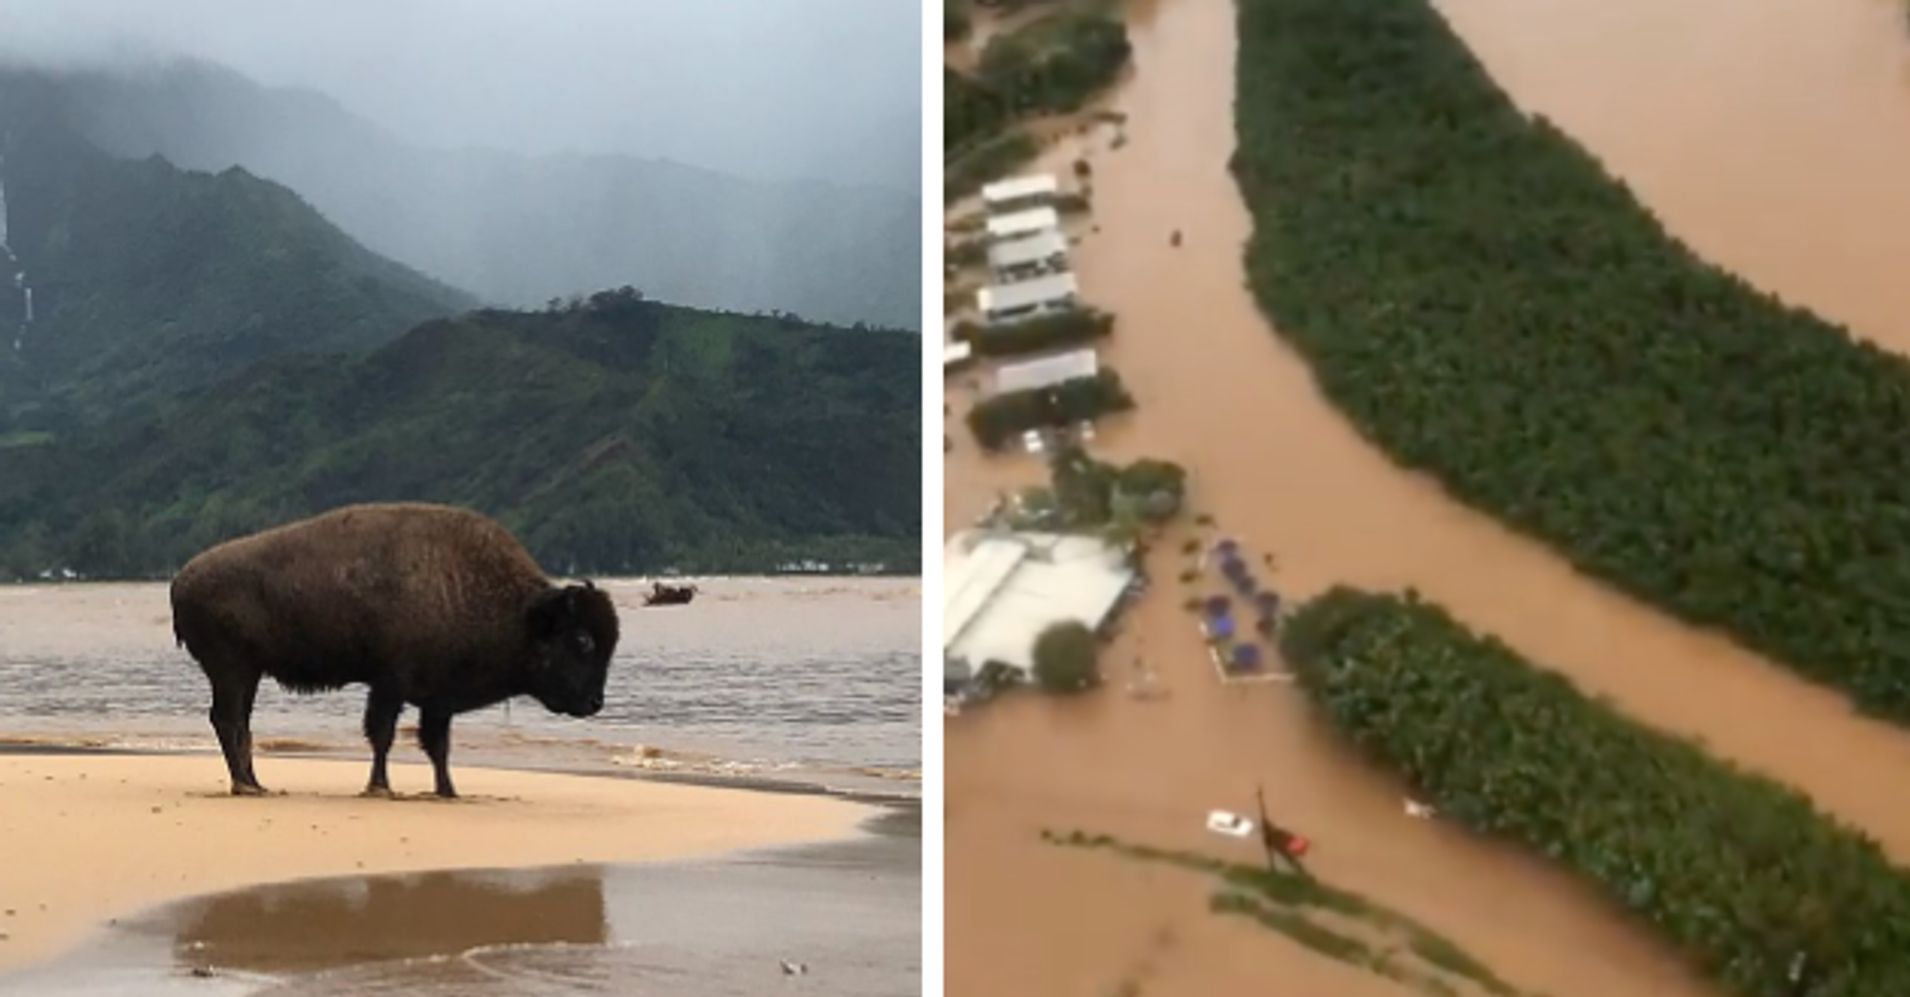 Historic Floods, Landslides Devastate The Hawaiian Island Of Kauai